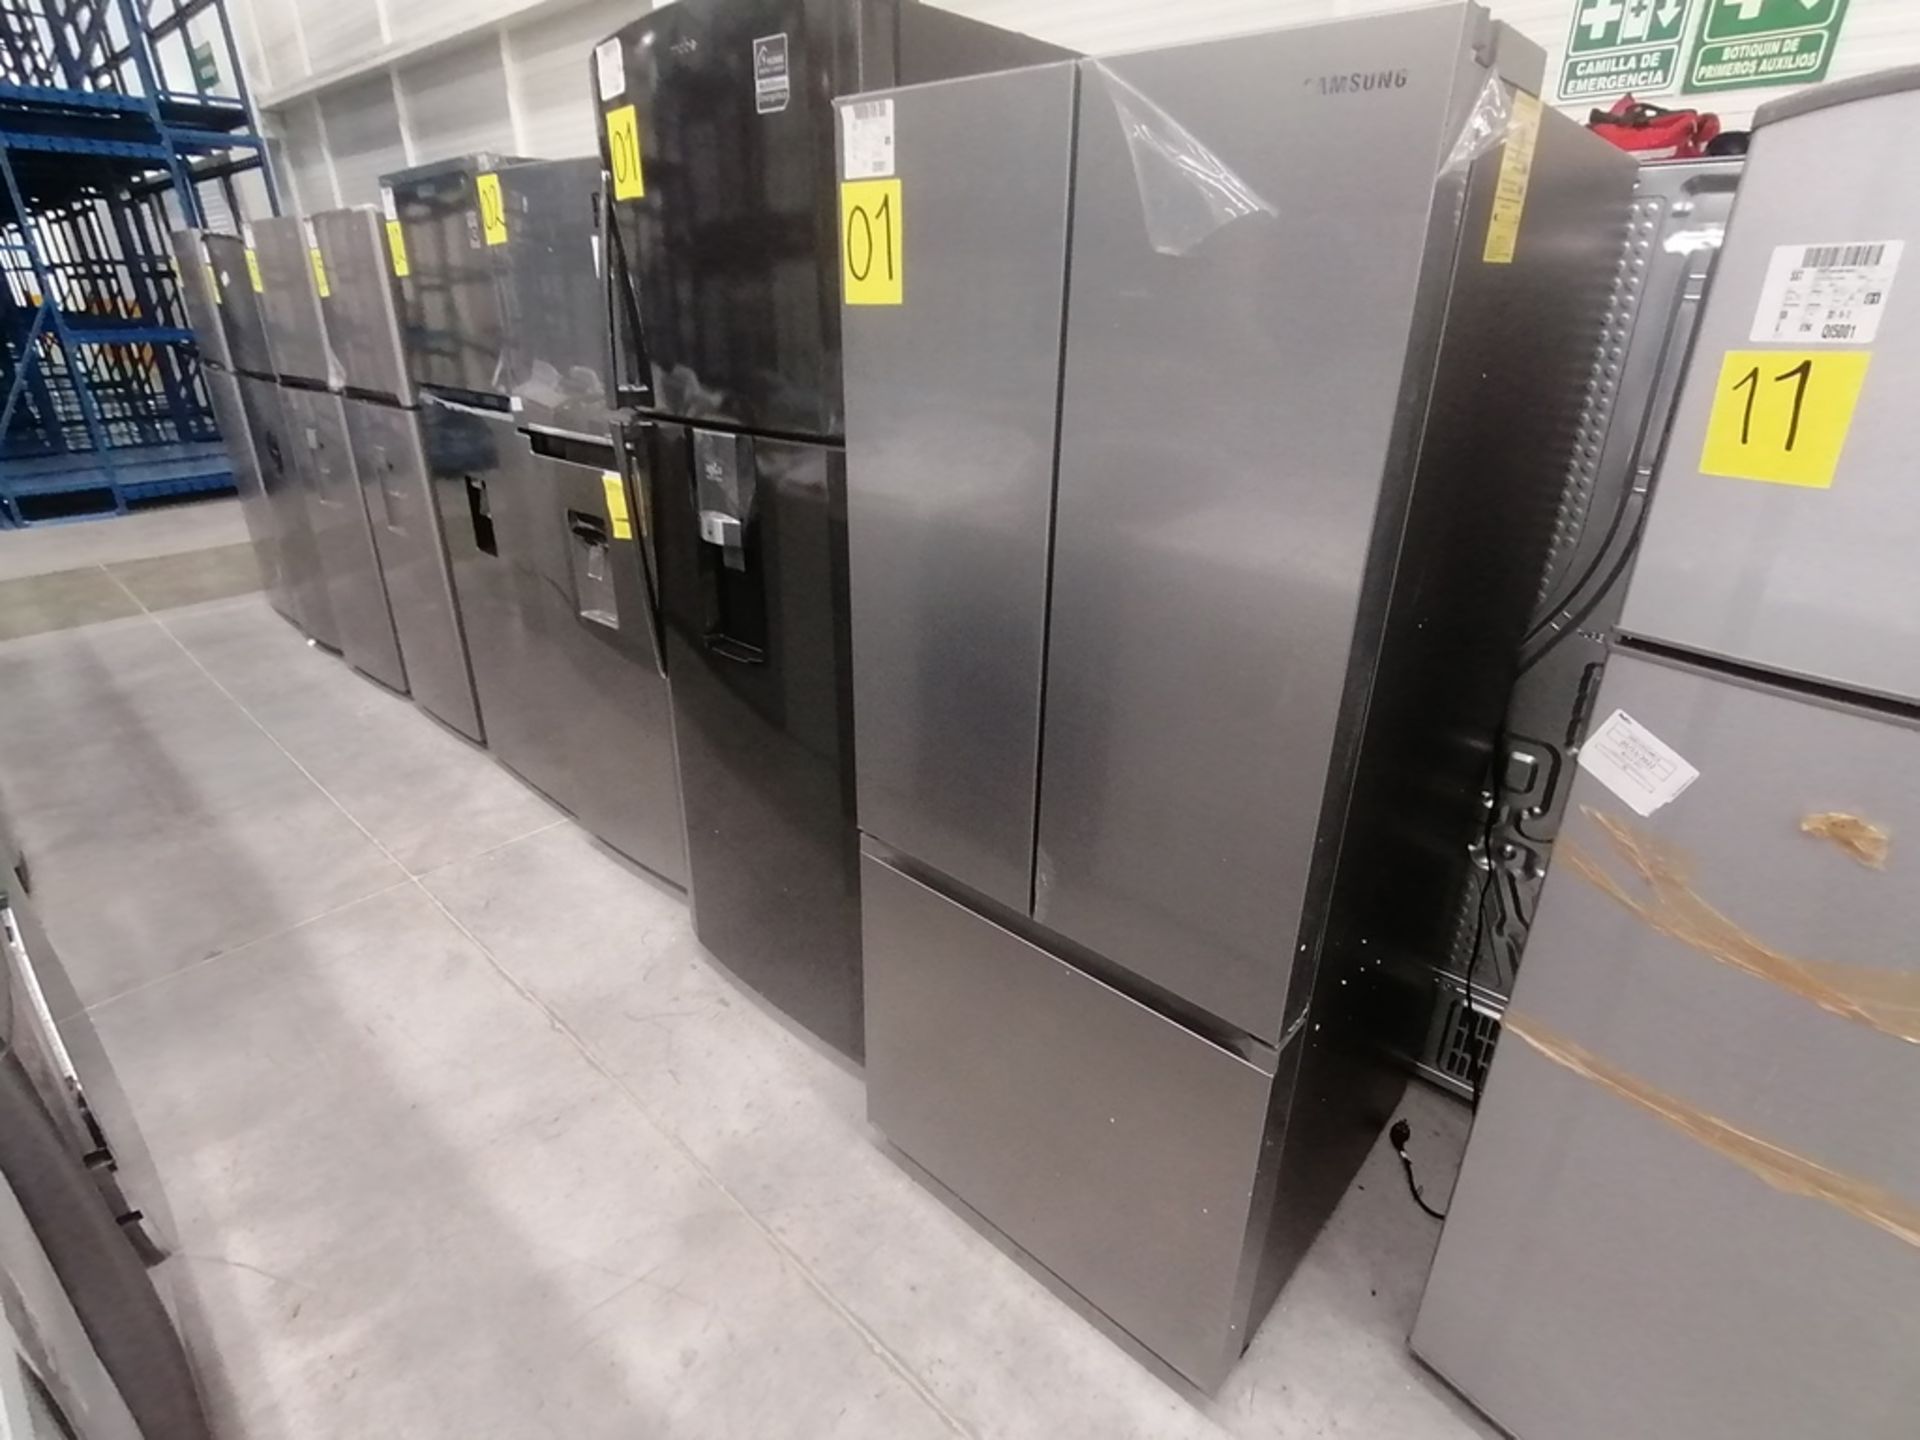 Lote de 2 refrigeradores incluye: 1 Refrigerador, Marca Samsung, Modelo RT22A401059, Serie 8BA84BBR